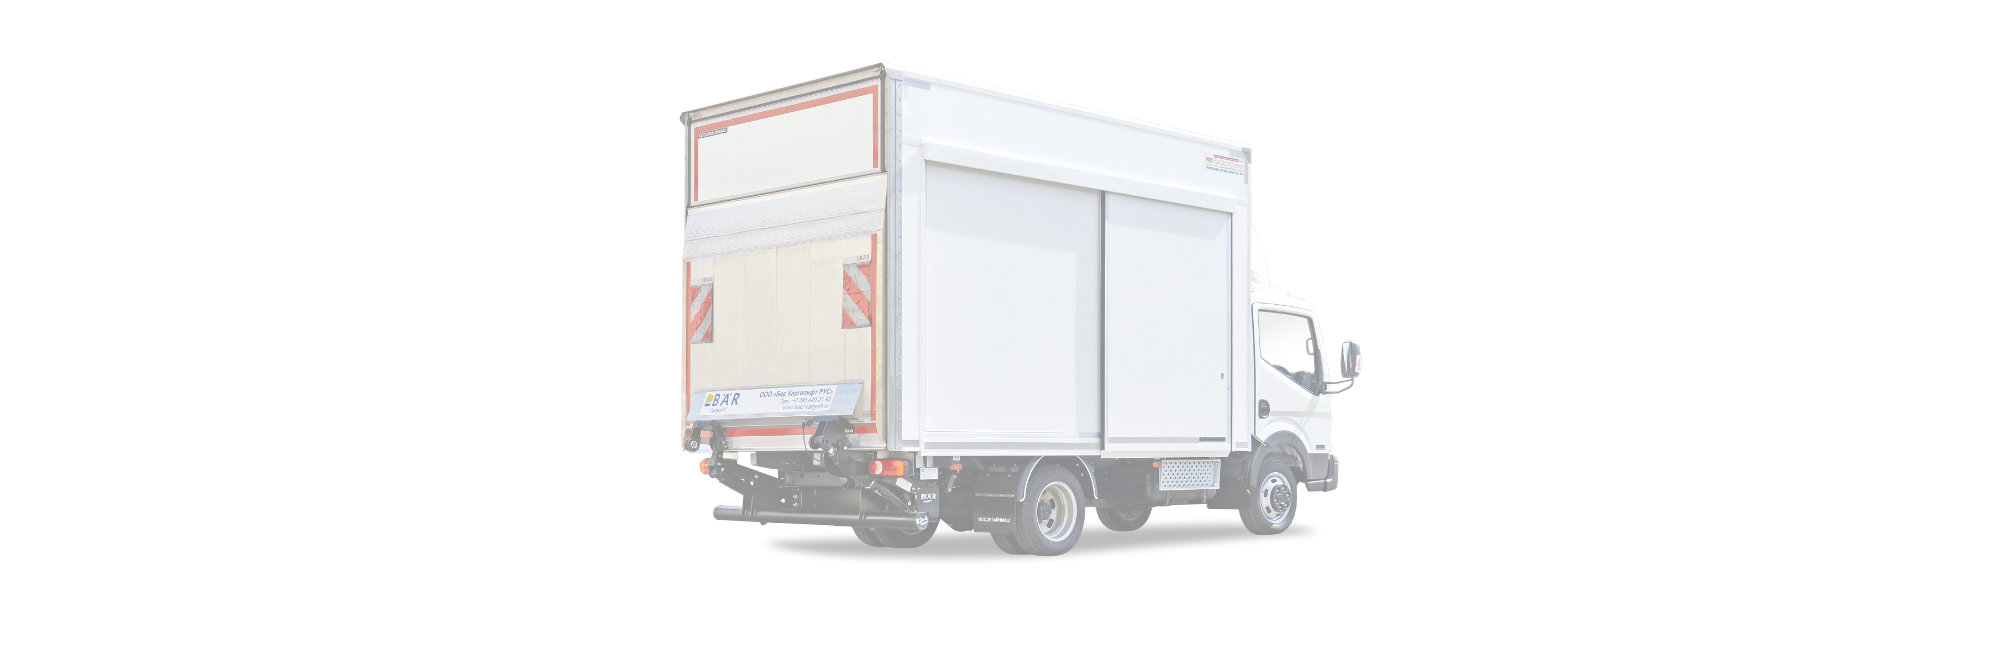 Decopan Commercial Vehicle (Ticari Araç) CTP levha galeri gıda dışı kamyon, treyler, kamyonet,van kasa